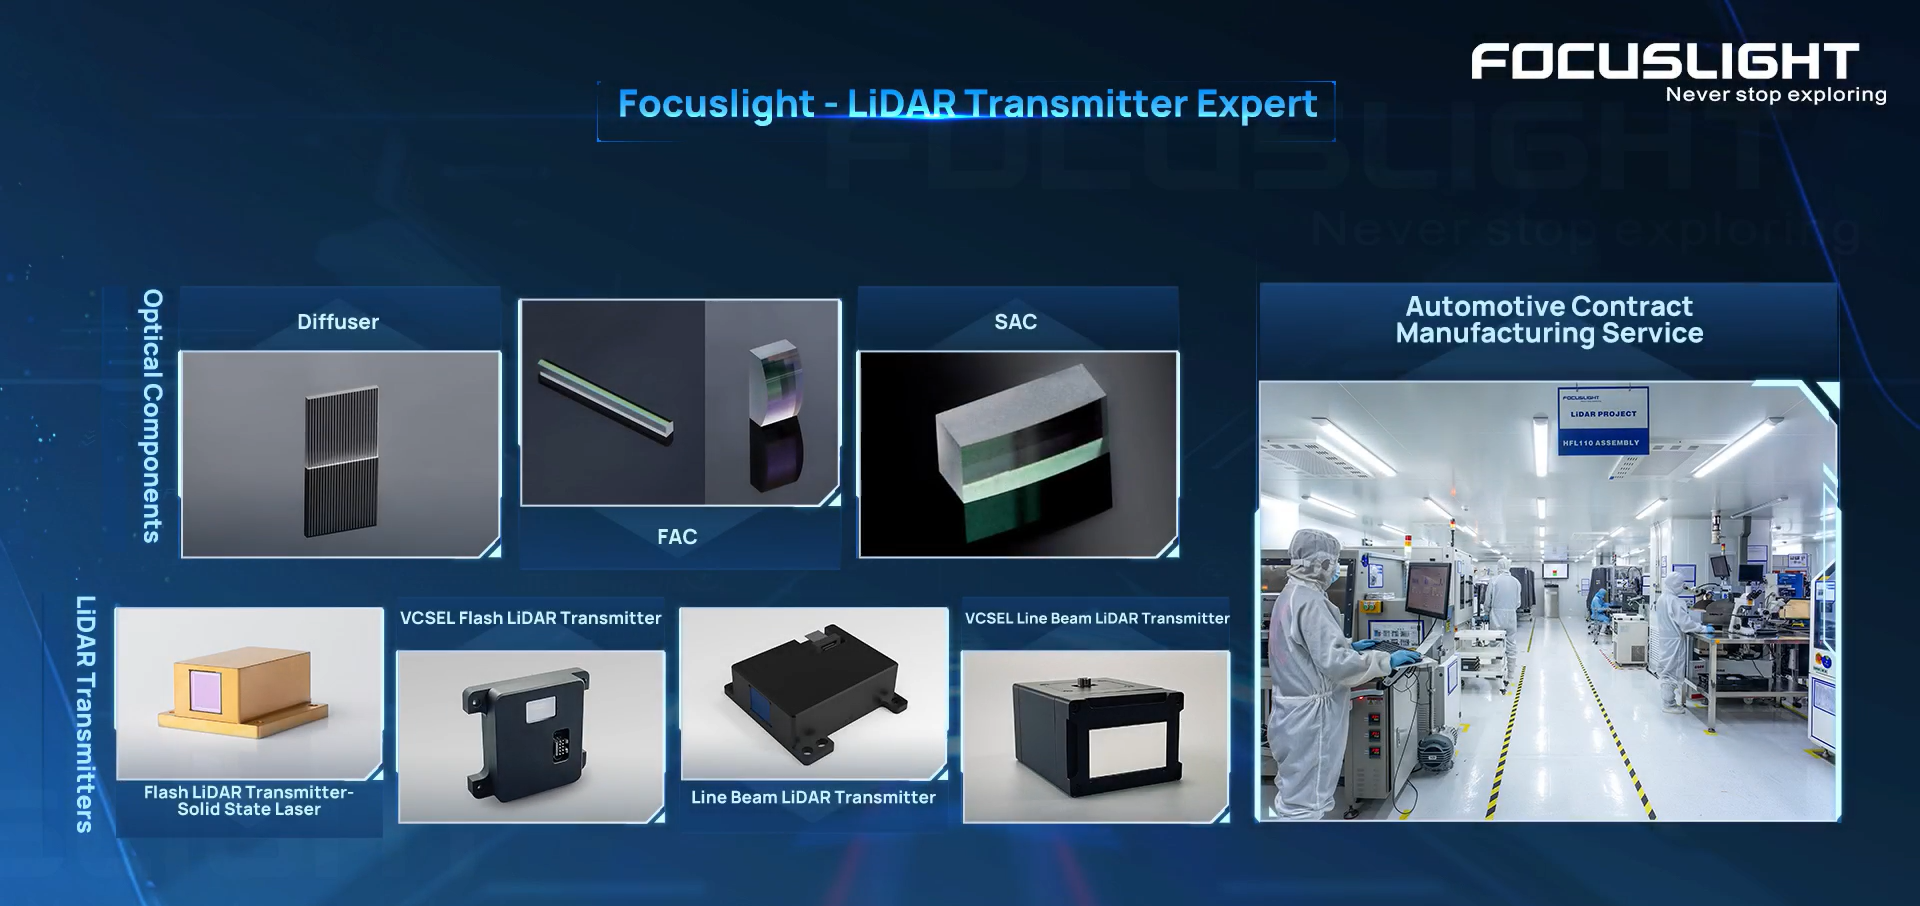 Focuslight -- LiDAR Transmitter Expert